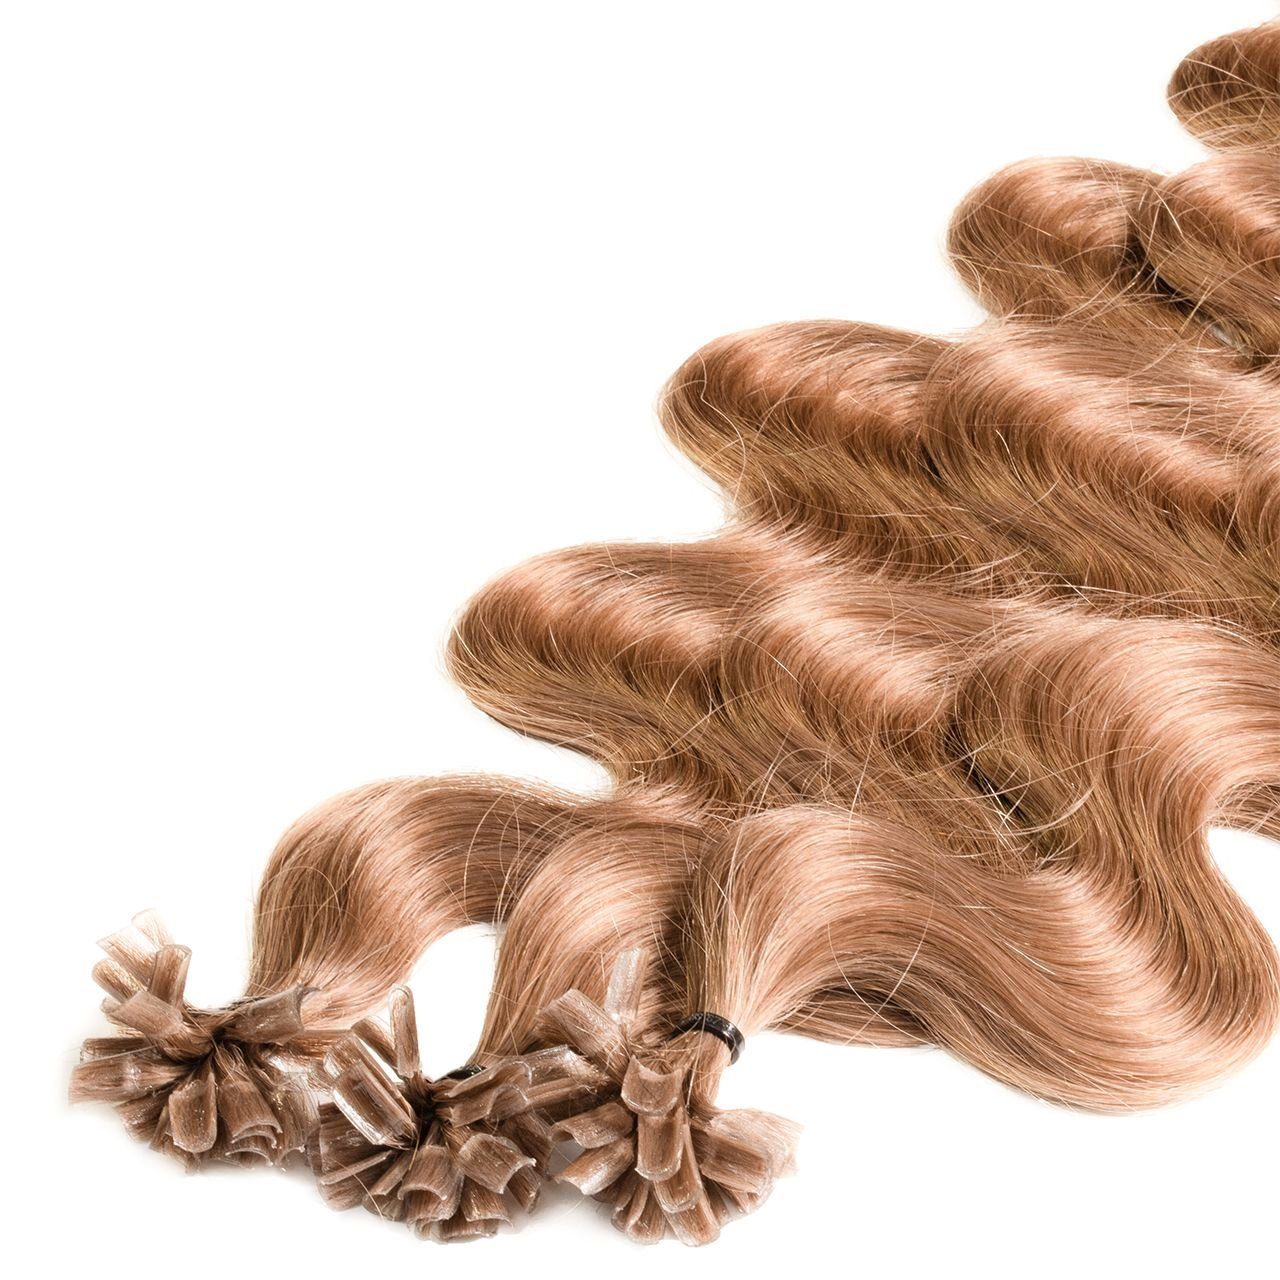 Echthaar-Extension Natur-Asch #8/01 40cm Premium hair2heart Hellblond Bondings gewellt